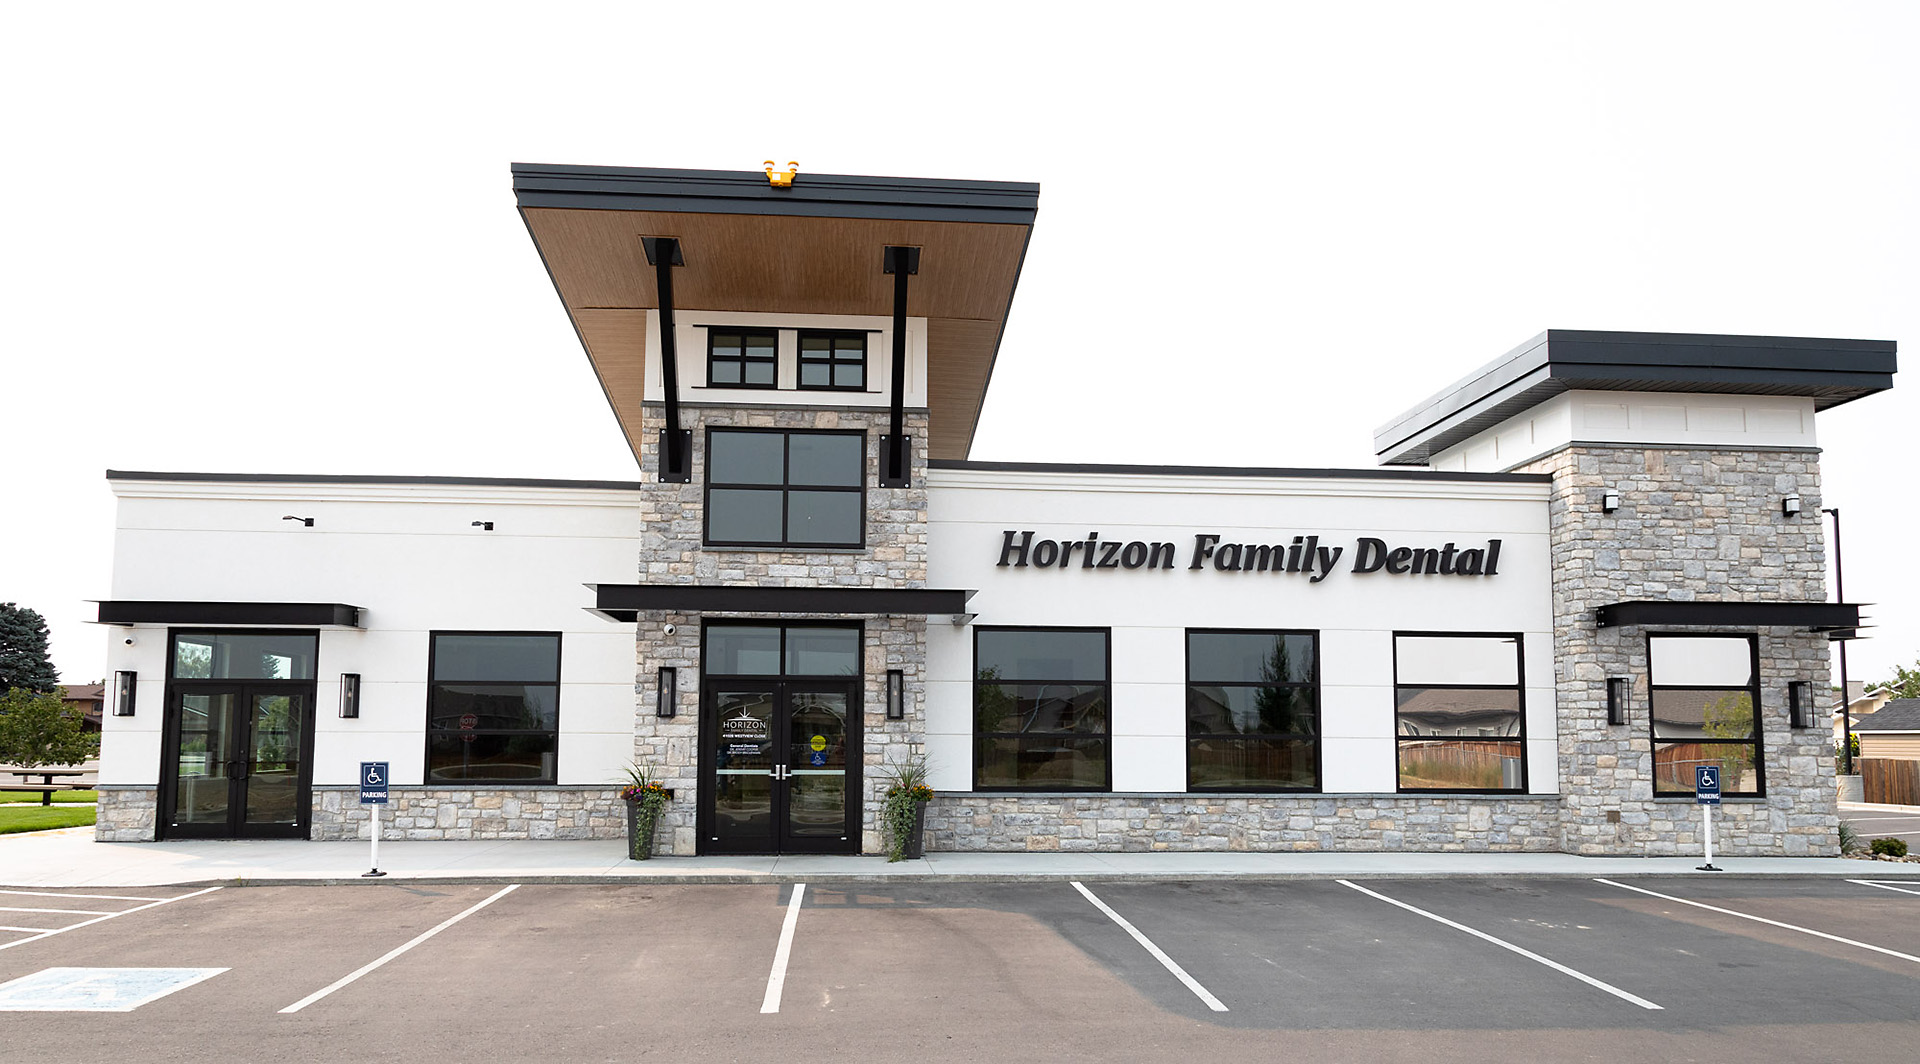 Horizon Family Dental building in Taber 